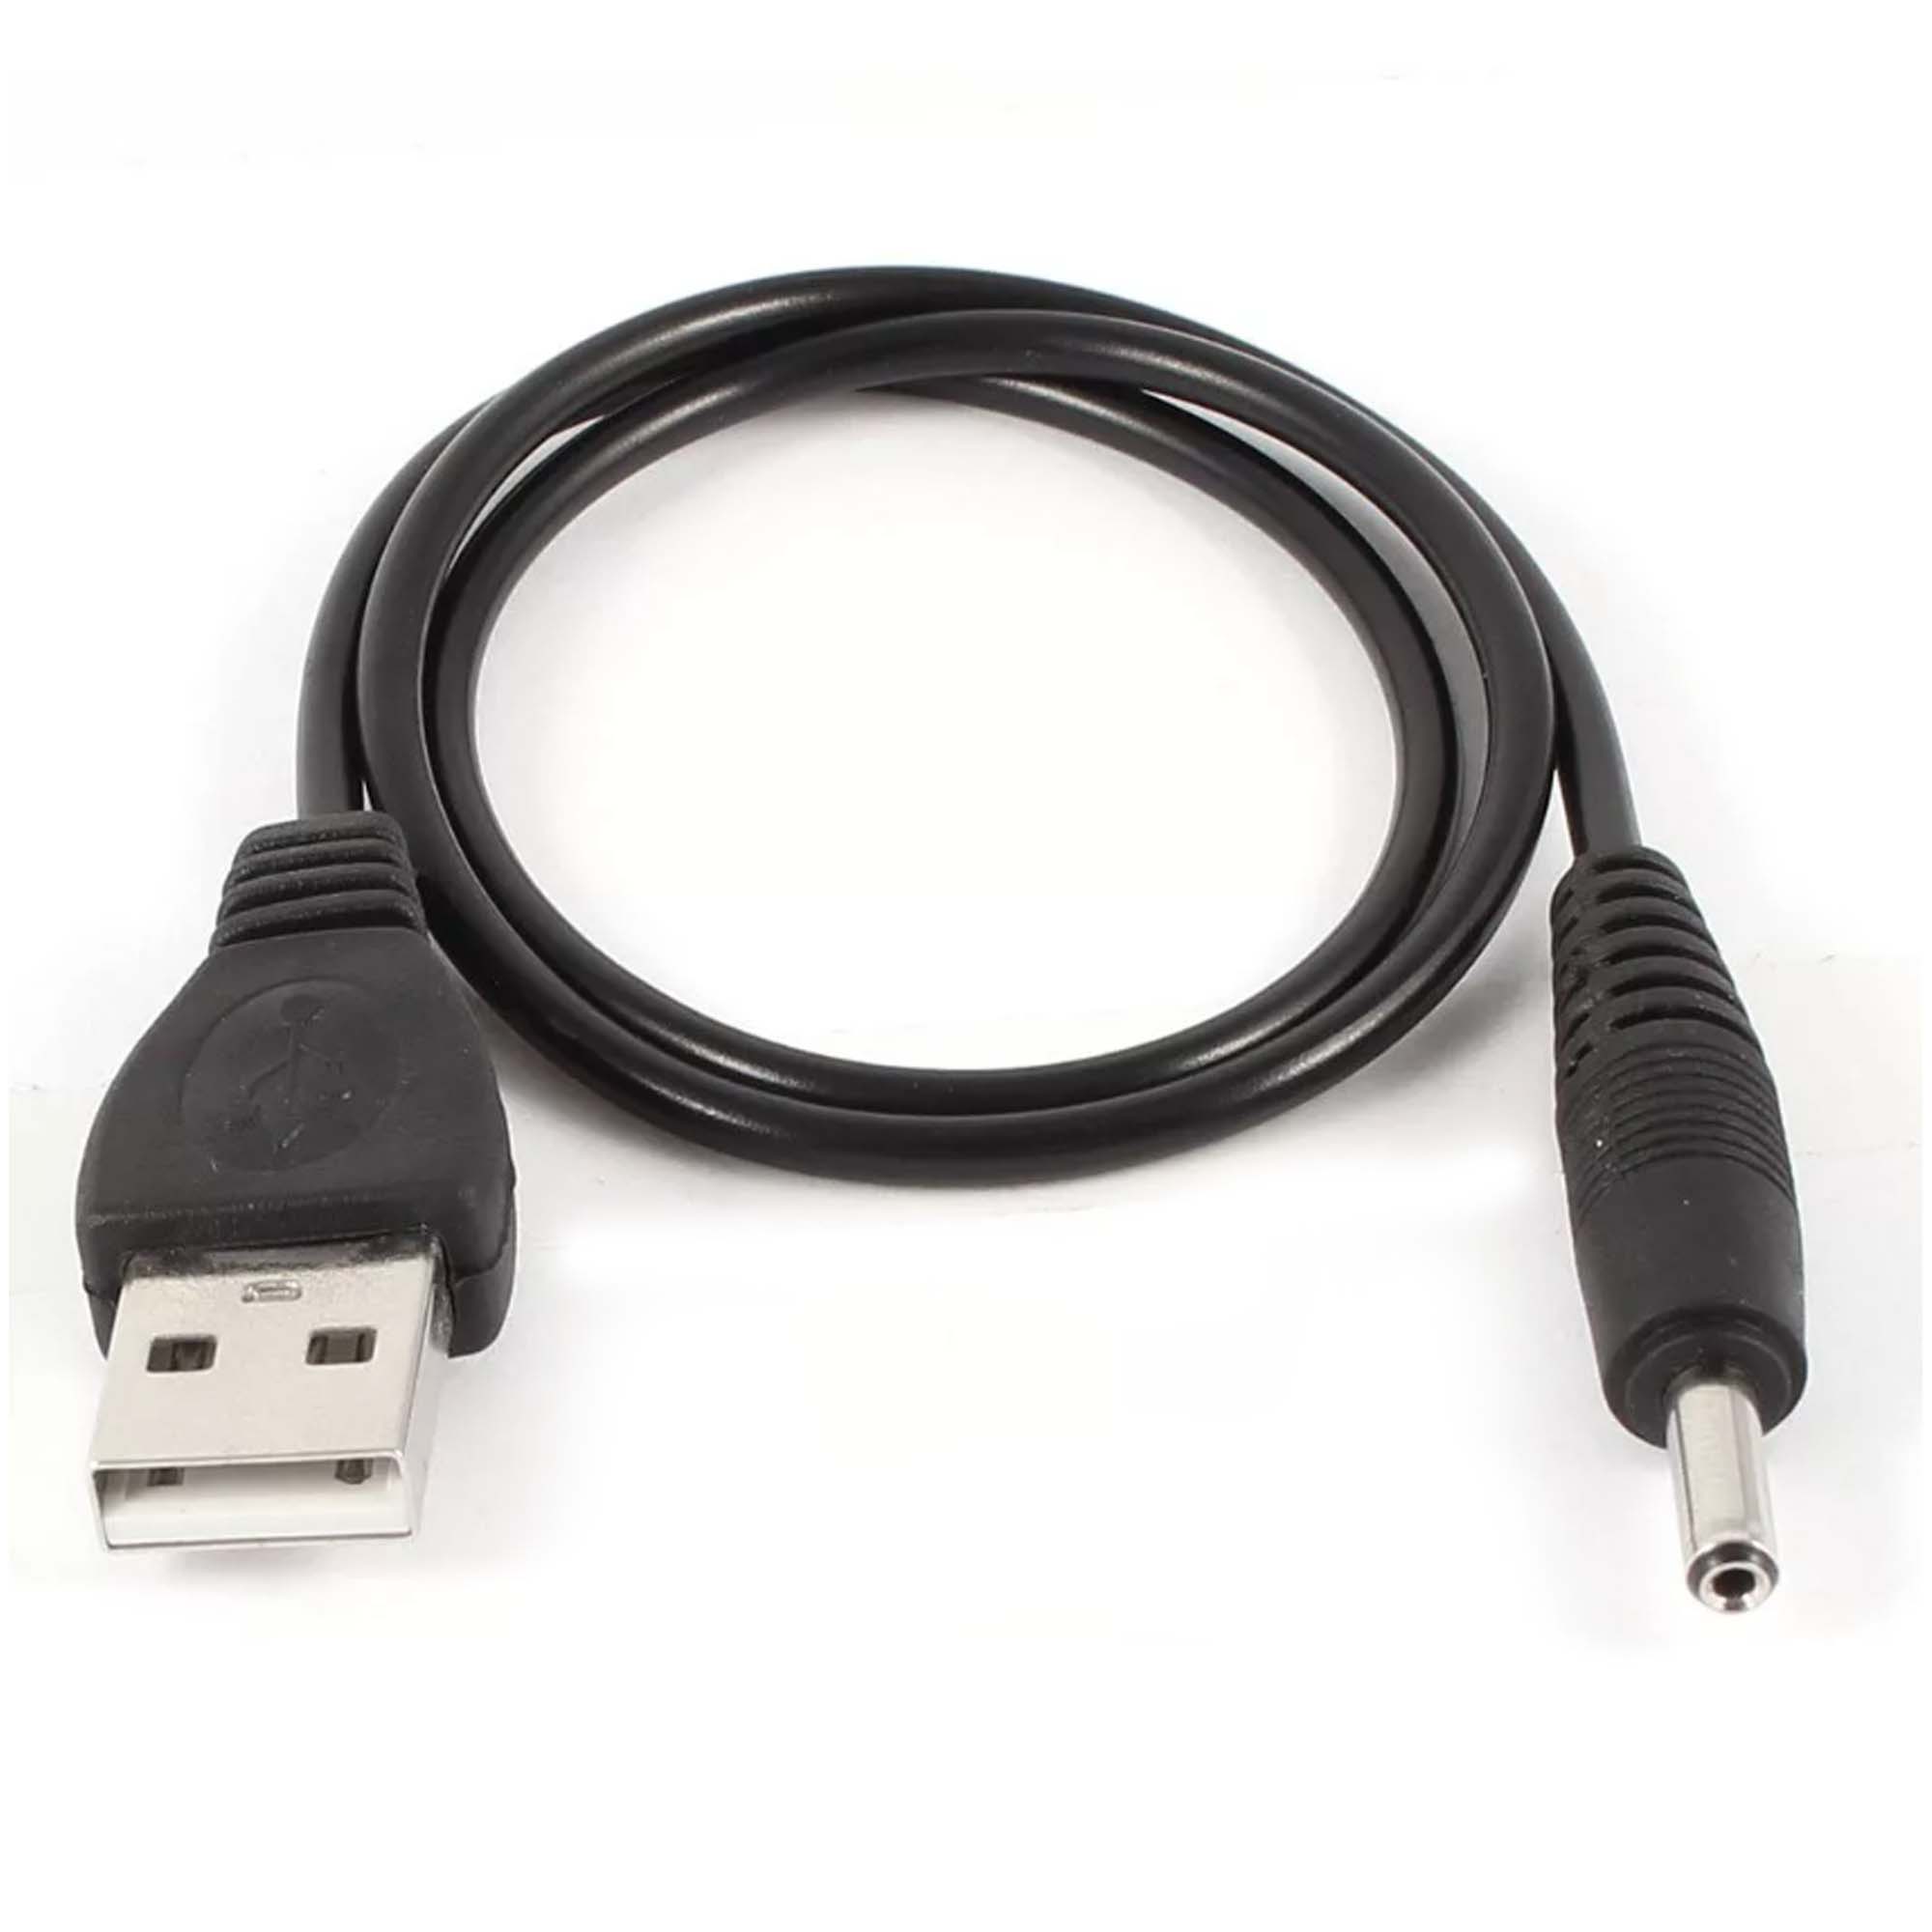  USB-DC 5.5*2.2 1 ..